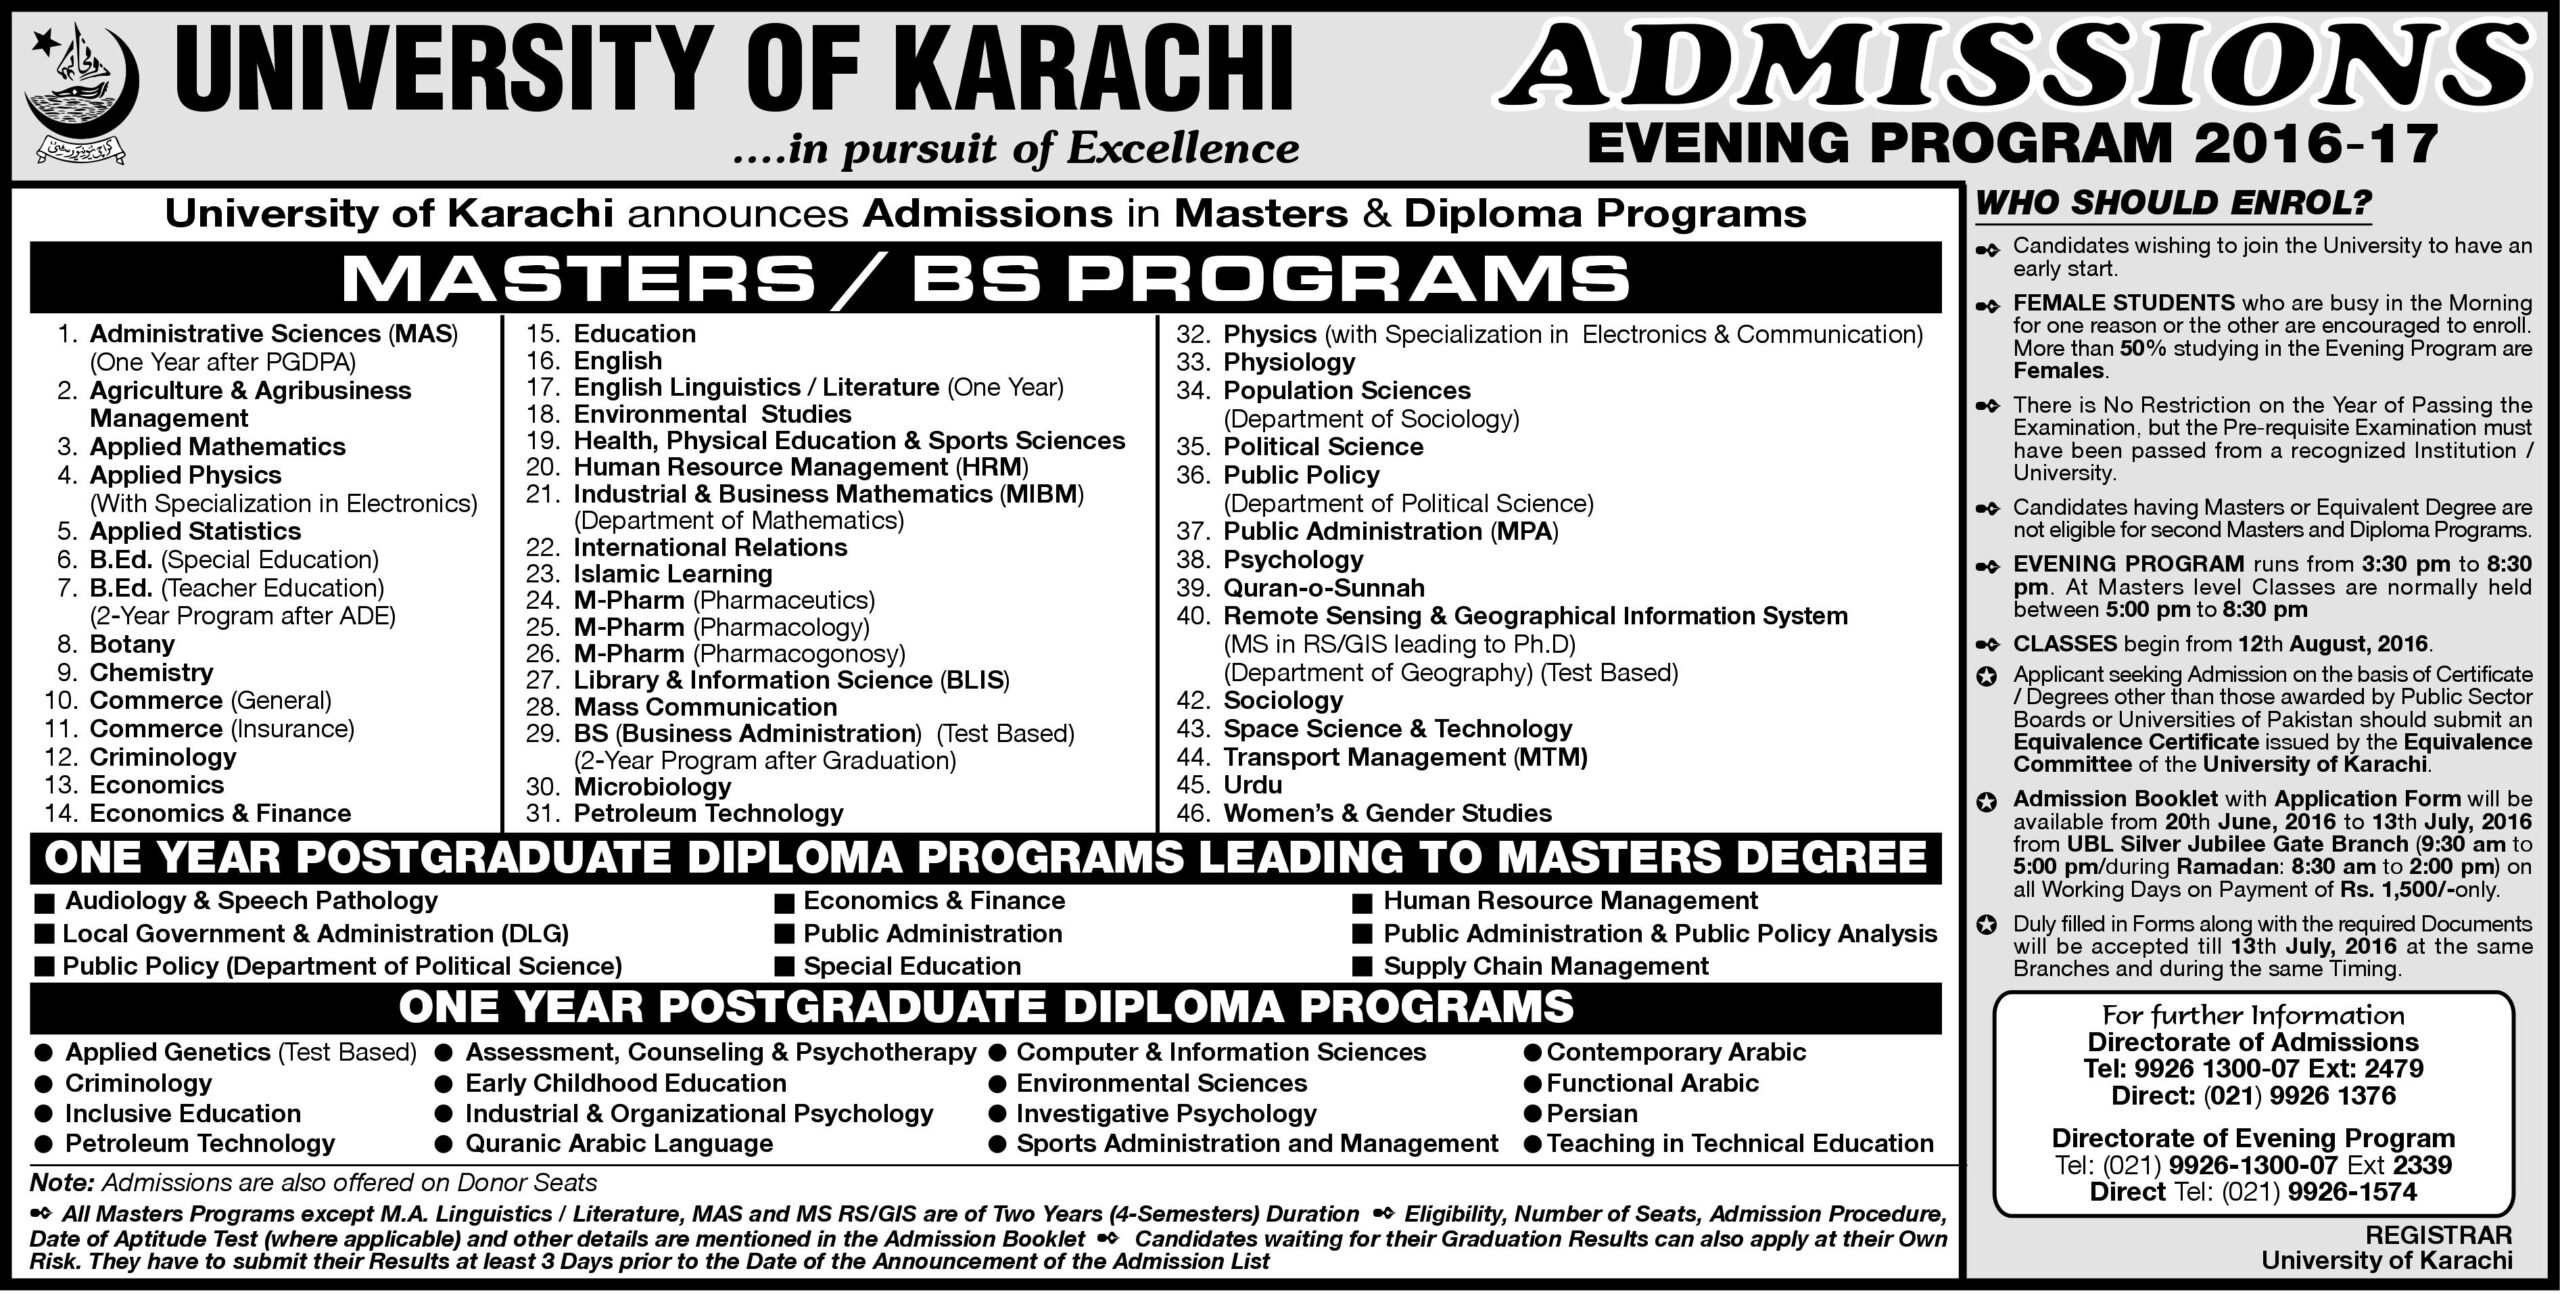 Uok Karachi University Masters Admission 2017 Evening